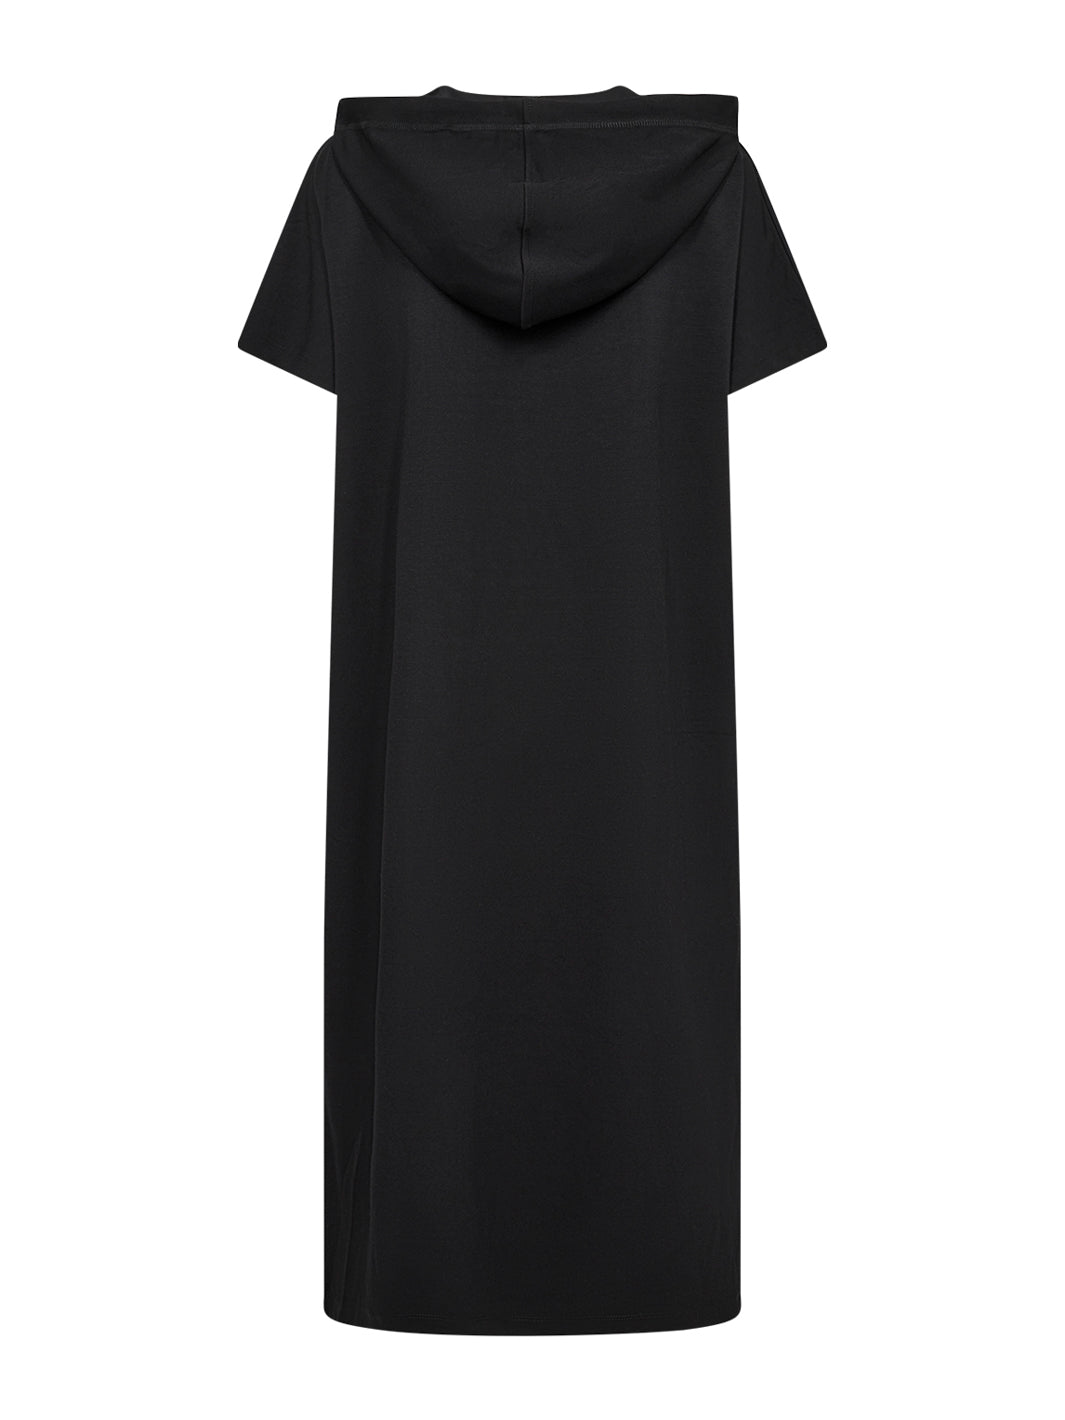 Soya Concept Banu 178 dress black - Online-Mode